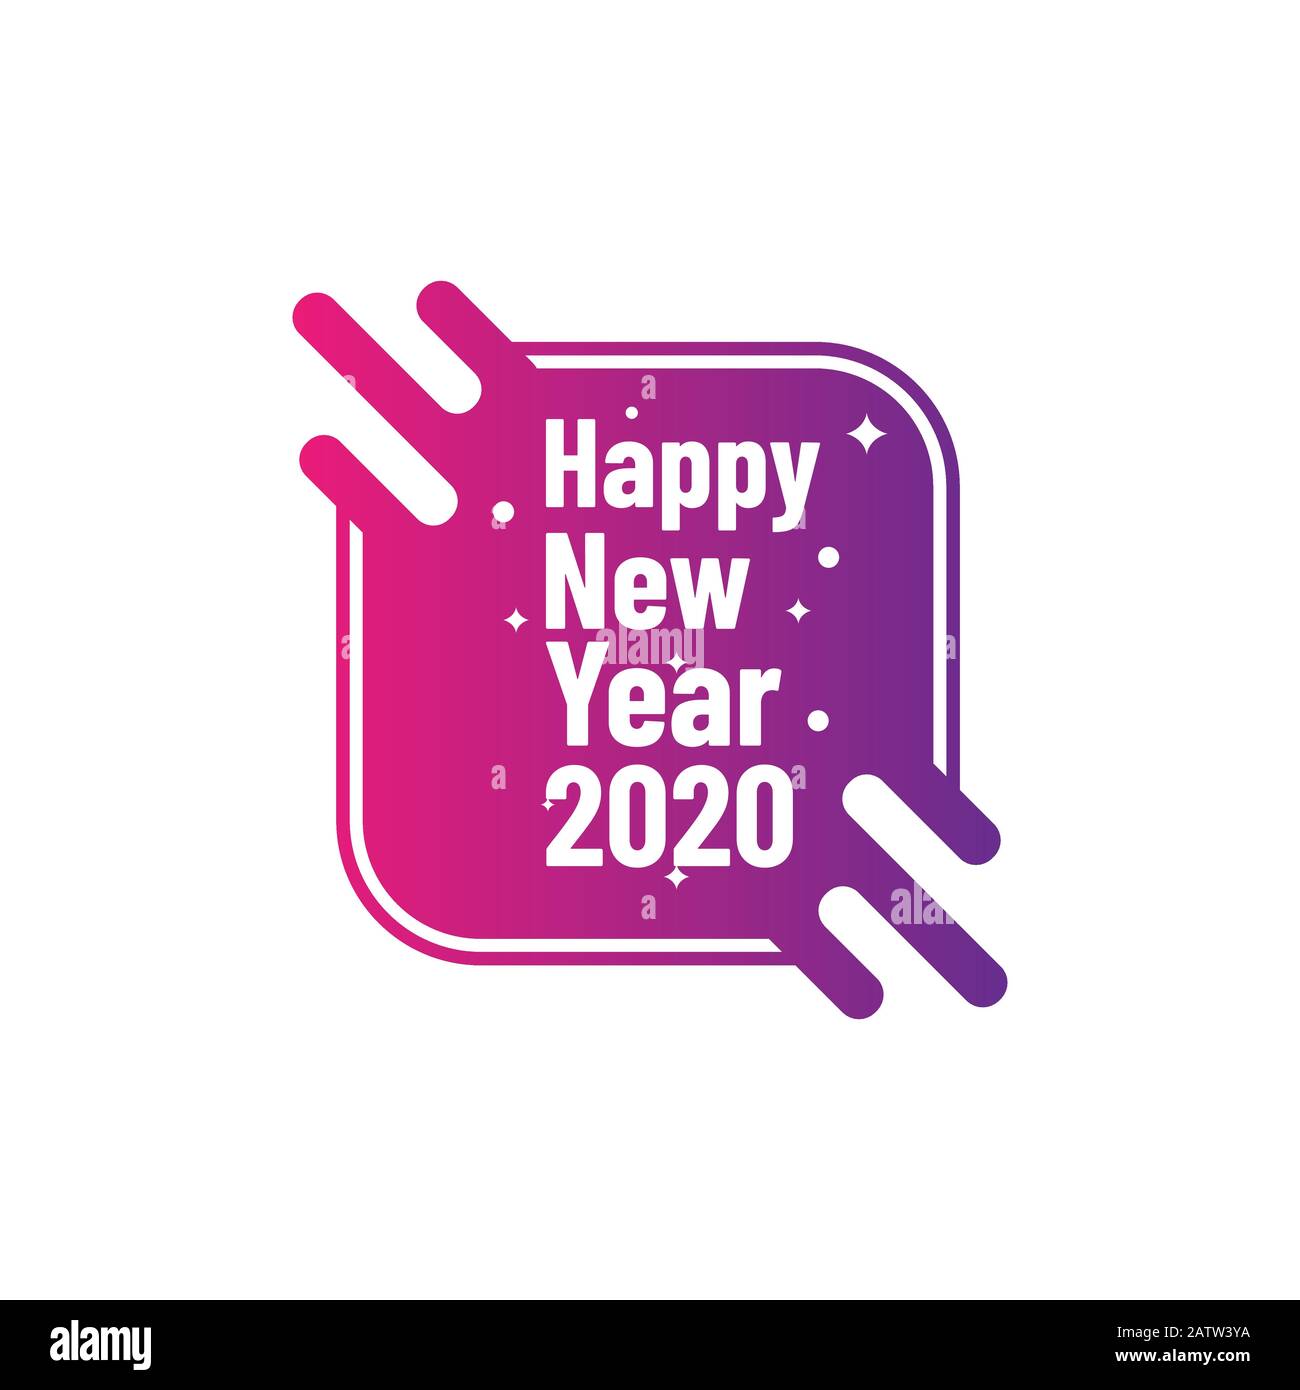 2020 bunter Text isoliert auf schwarzem Hintergrund, Neujahr 2020, 2020 Text für Kalender neue Jahre, Happy New Year 2020.2020 Startkonzept, Nummer 2 Stock Vektor